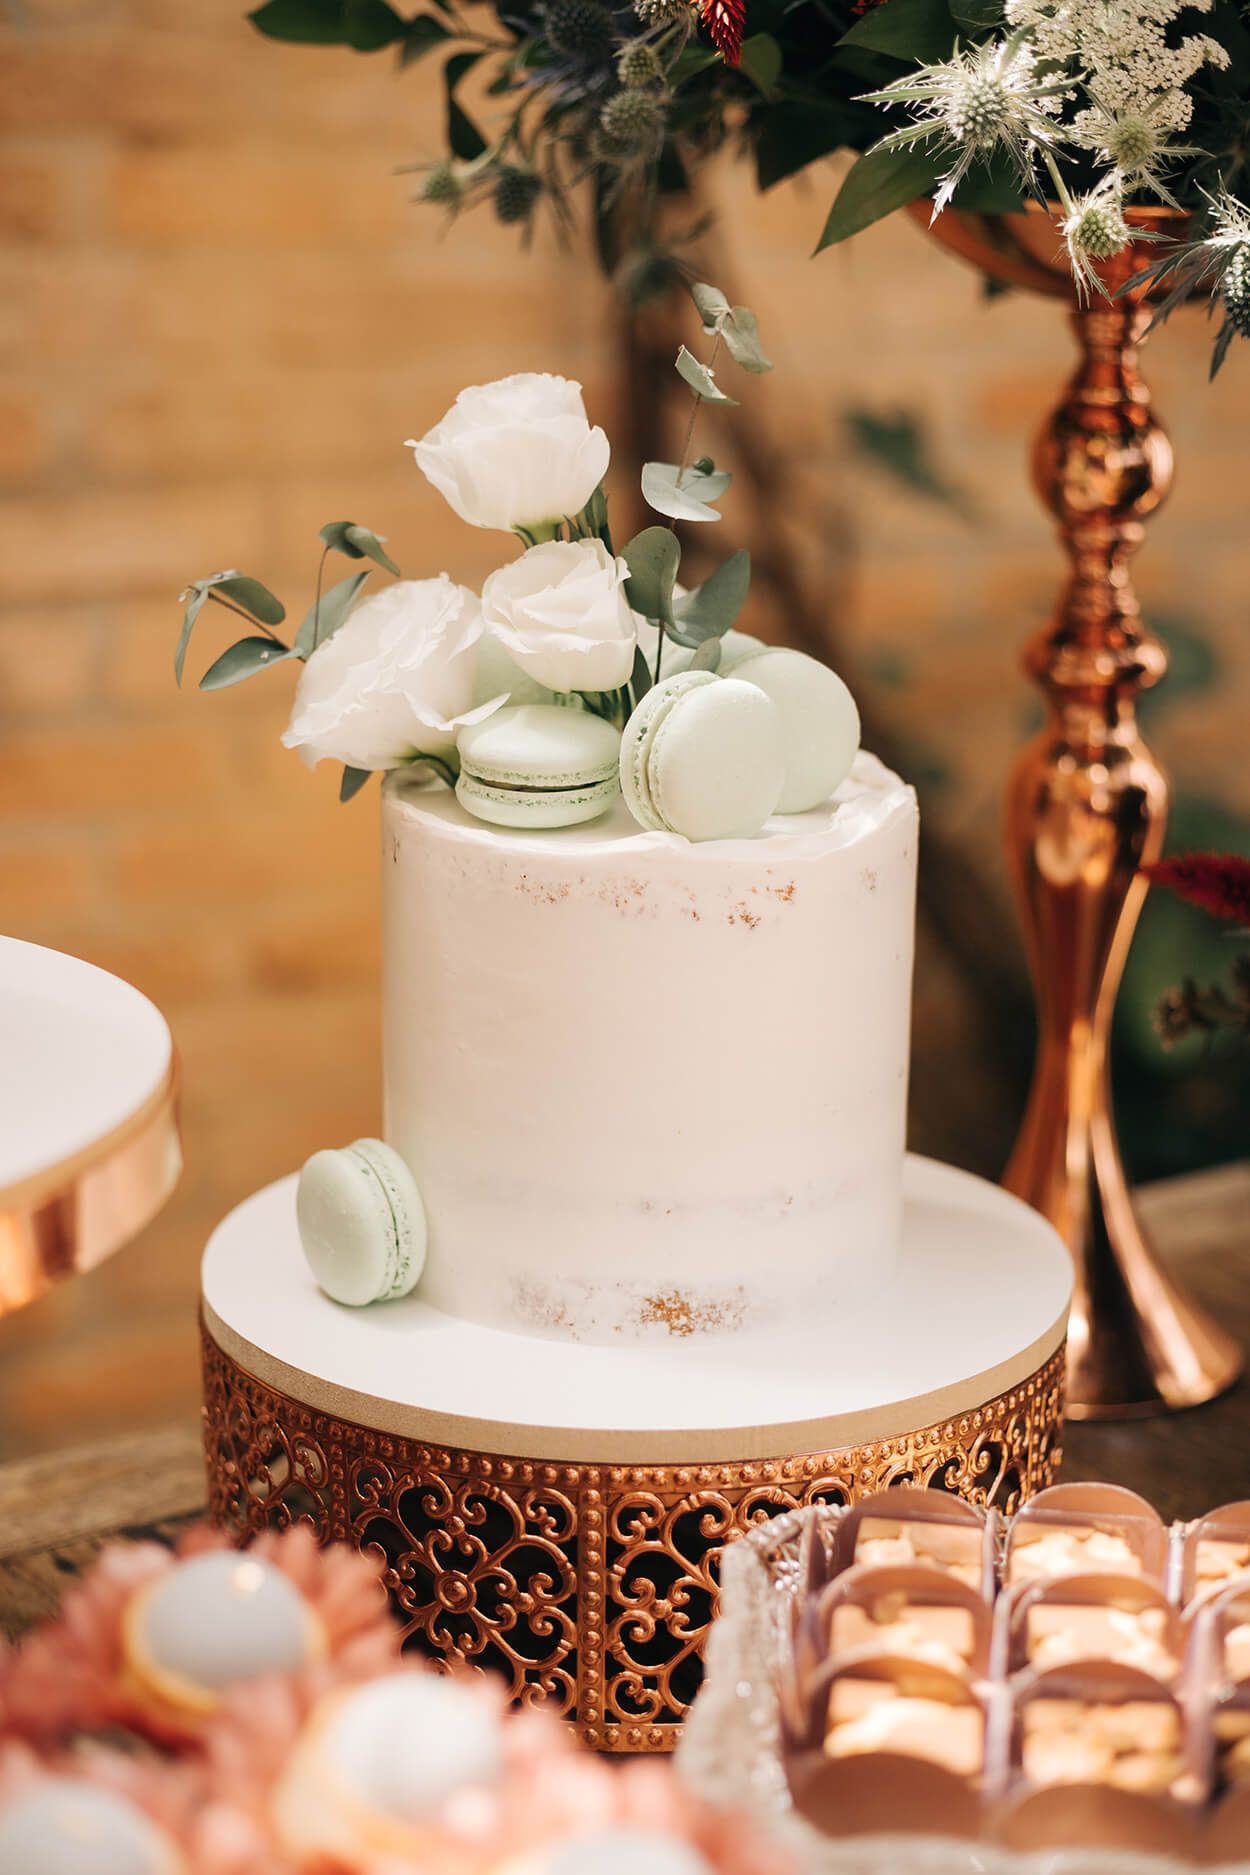 Bolo de casamento branco espatulado com rosas brancass e macaroons verdes no topo